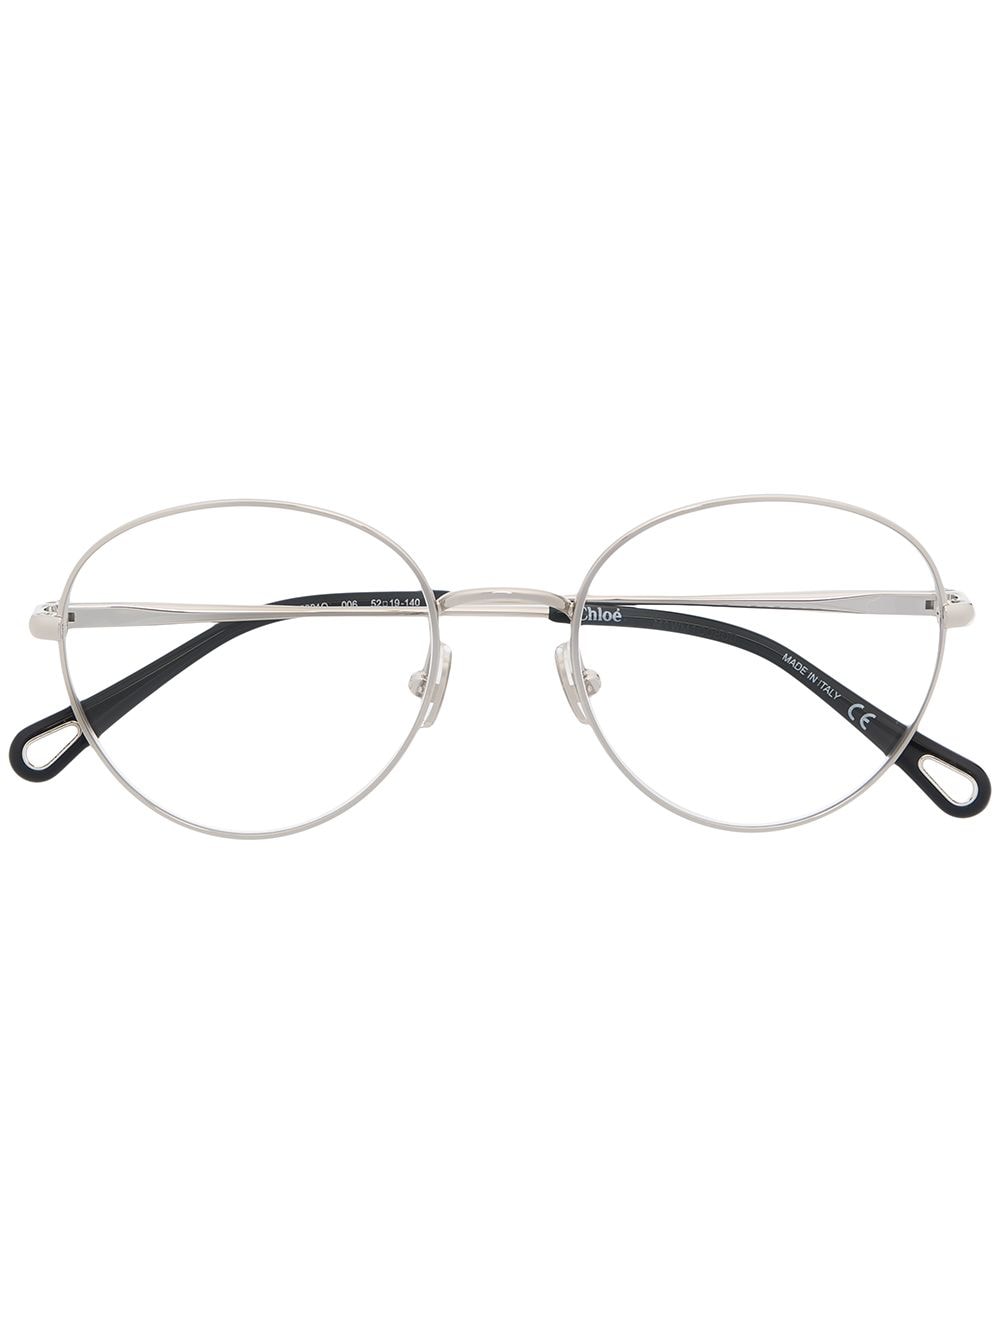 Chloé Eyewear Brille mit rundem Gestell - Silber von Chloé Eyewear